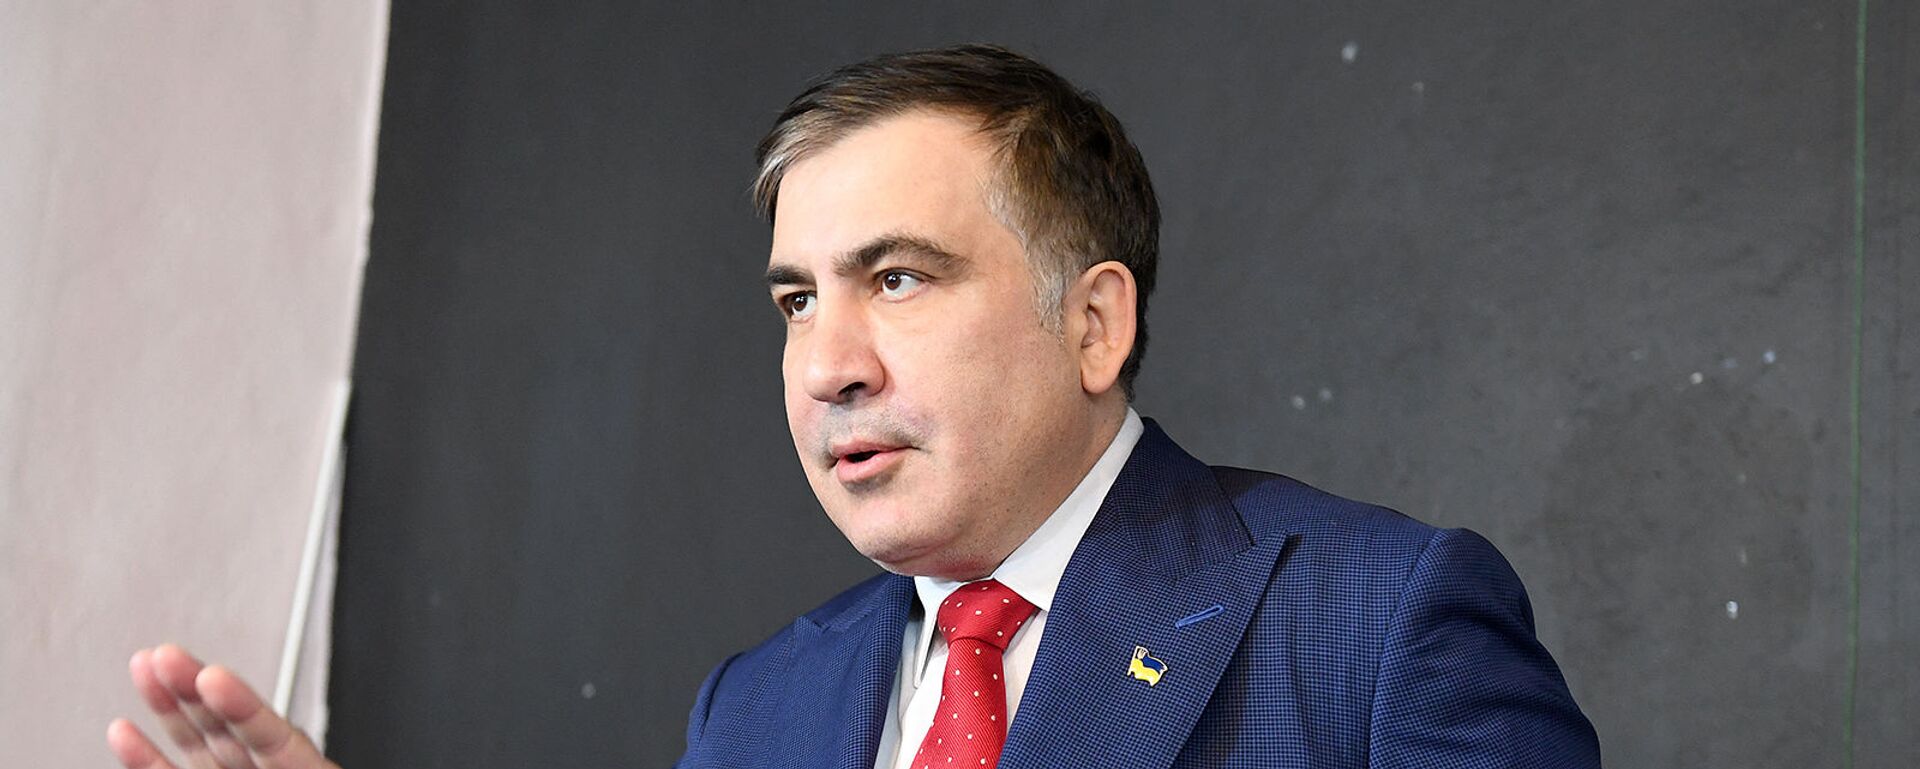 Бывший президент Грузии Михаил Саакашвили на пресс-конференции (13 февраля 2018). Варшава - Sputnik Армения, 1920, 29.10.2021